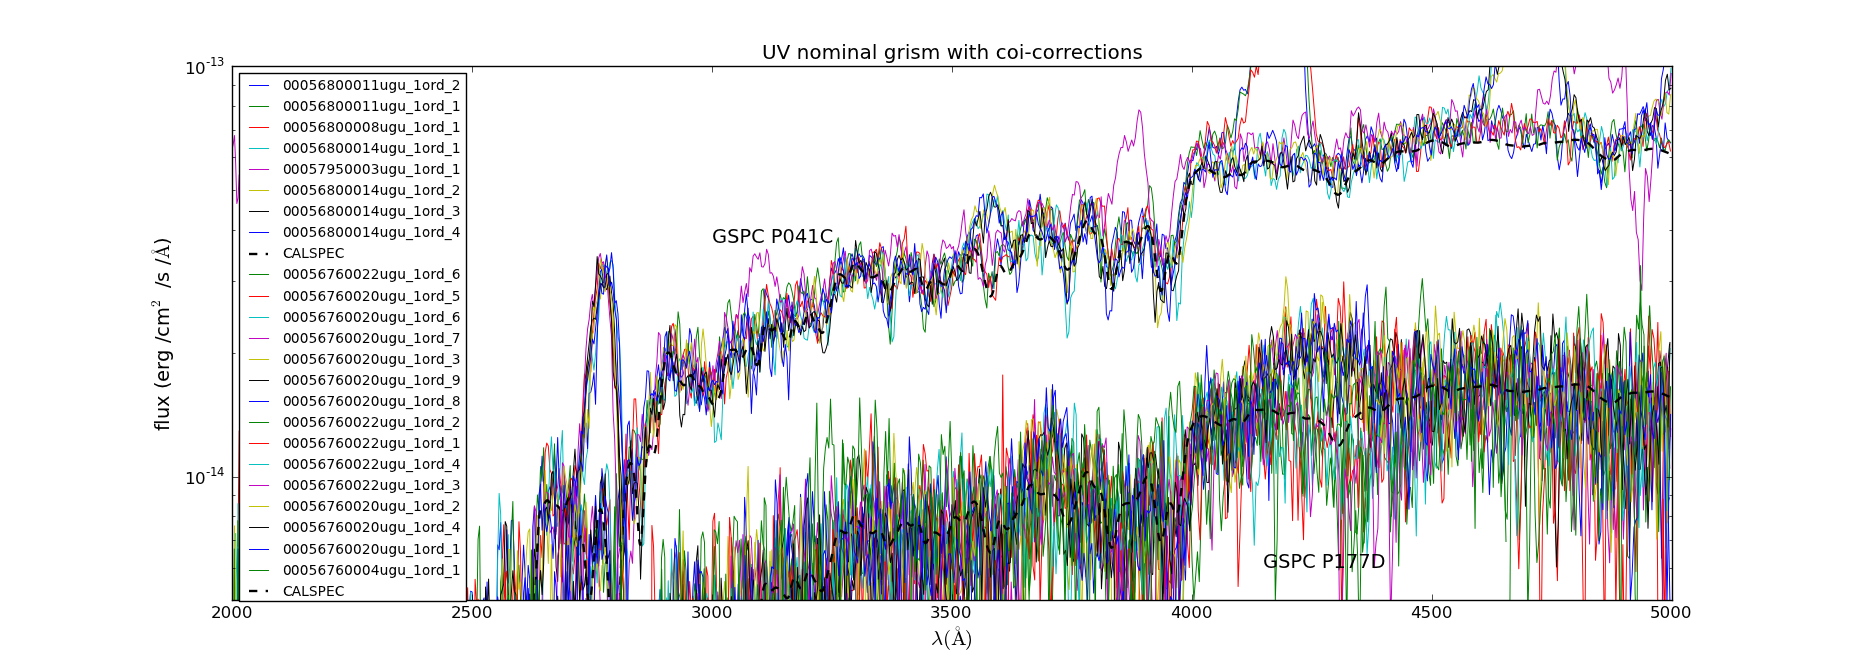 flux calibration (2012-09-26) initial coi-form